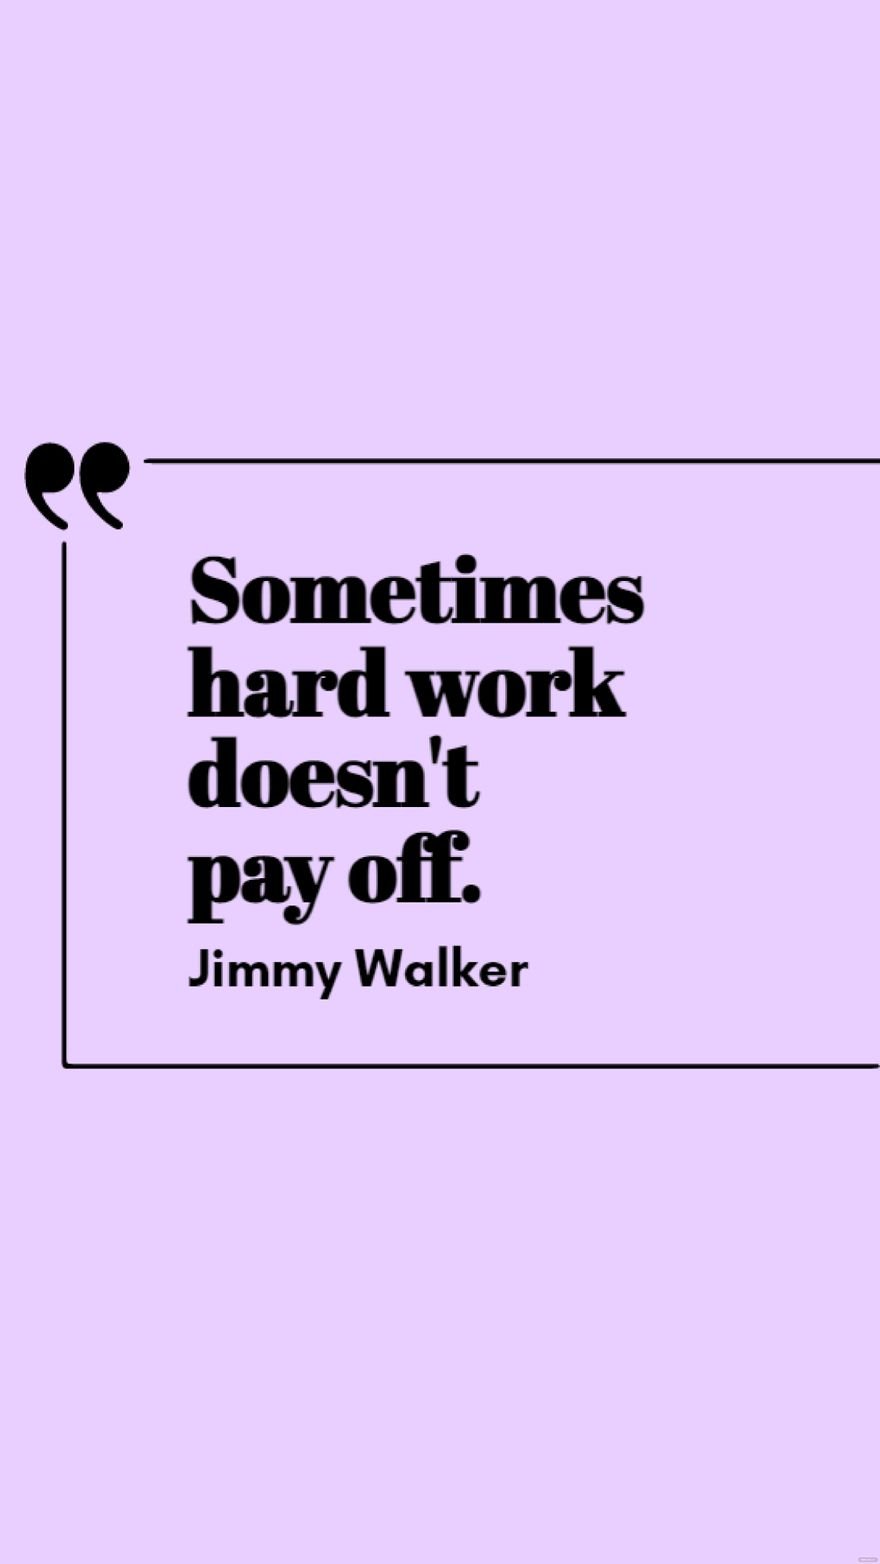 Free Jimmy Walker - Sometimes hard work doesn't pay off. in JPG